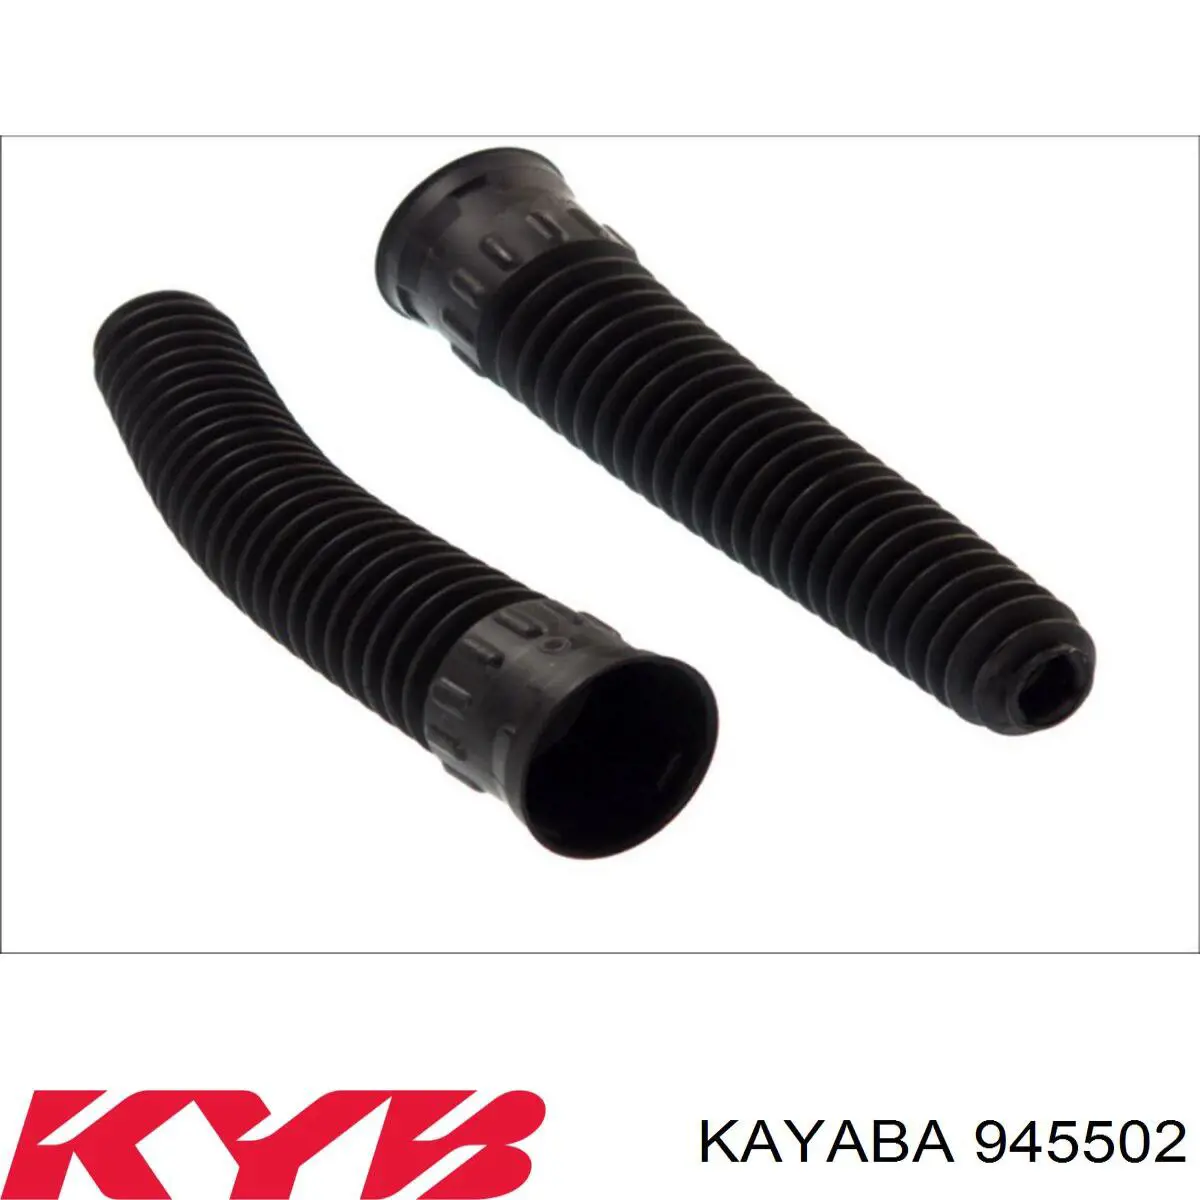 945502 Kayaba tope de amortiguador delantero, suspensión + fuelle